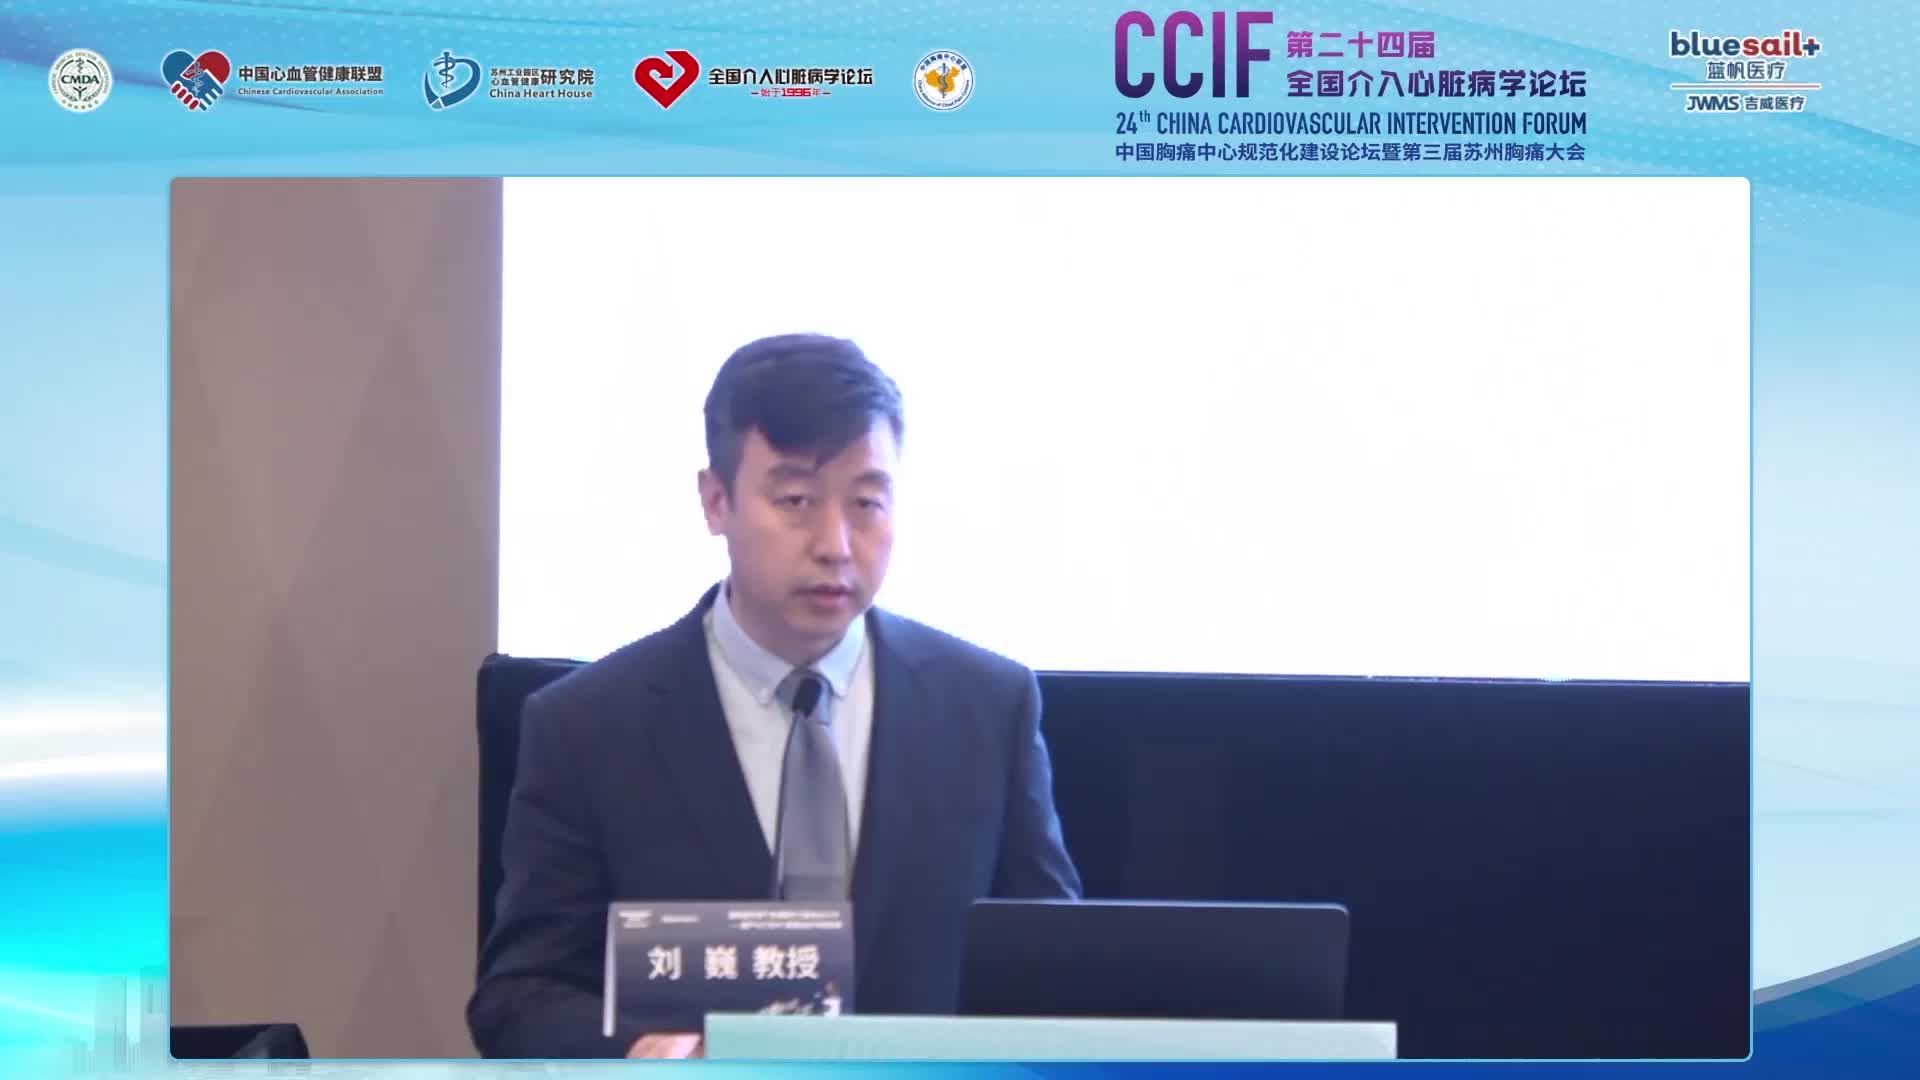 刘巍-OCT在冠心病精准介入中的最新临床研究证据及展望